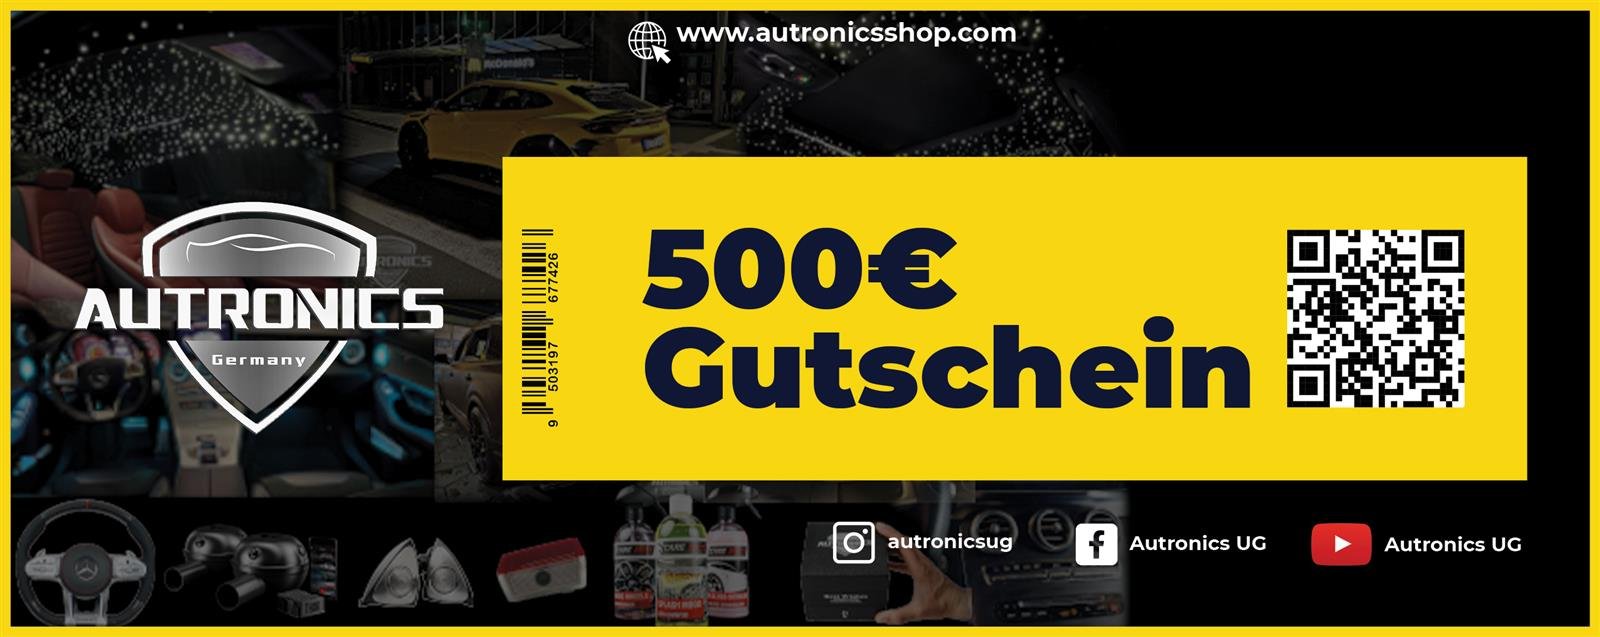 500€ Gutschein